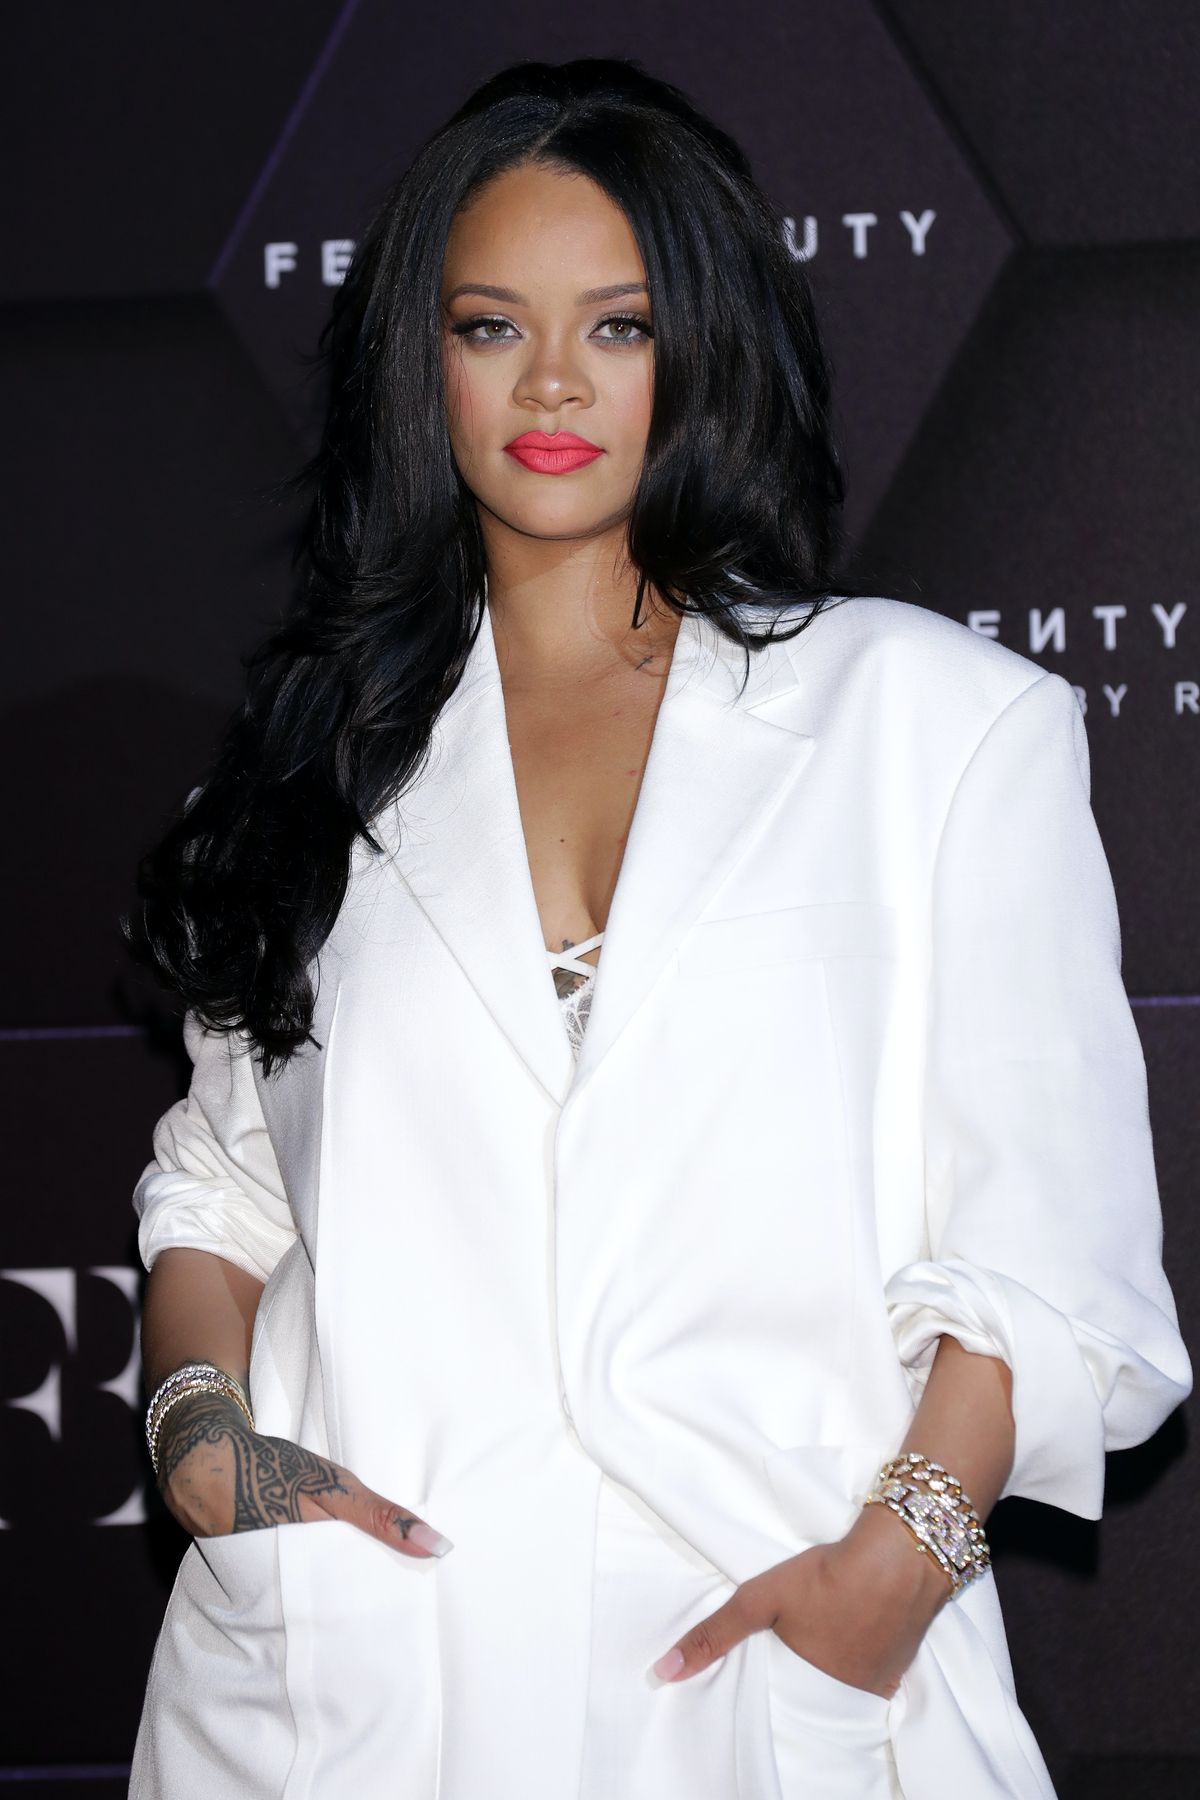 Tout ce que nous savons jusqu'à présent sur la ligne de cheveux Fenty signalée par Rihanna